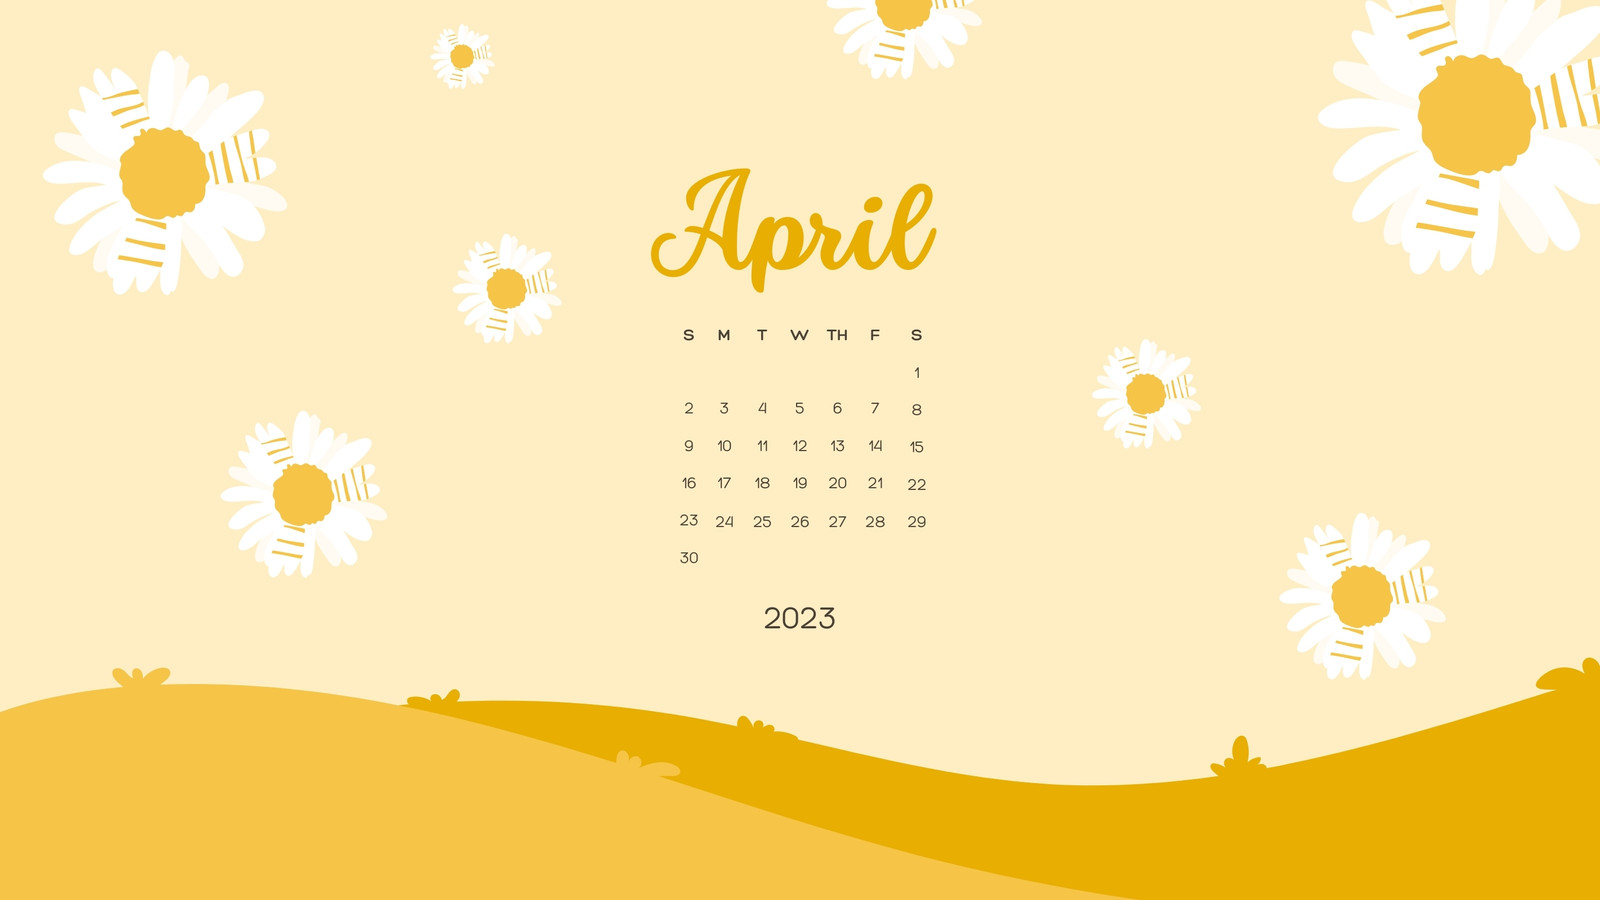 April 2022 Calendar Wallpapers  Top Free April 2022 Calendar Backgrounds   WallpaperAccess